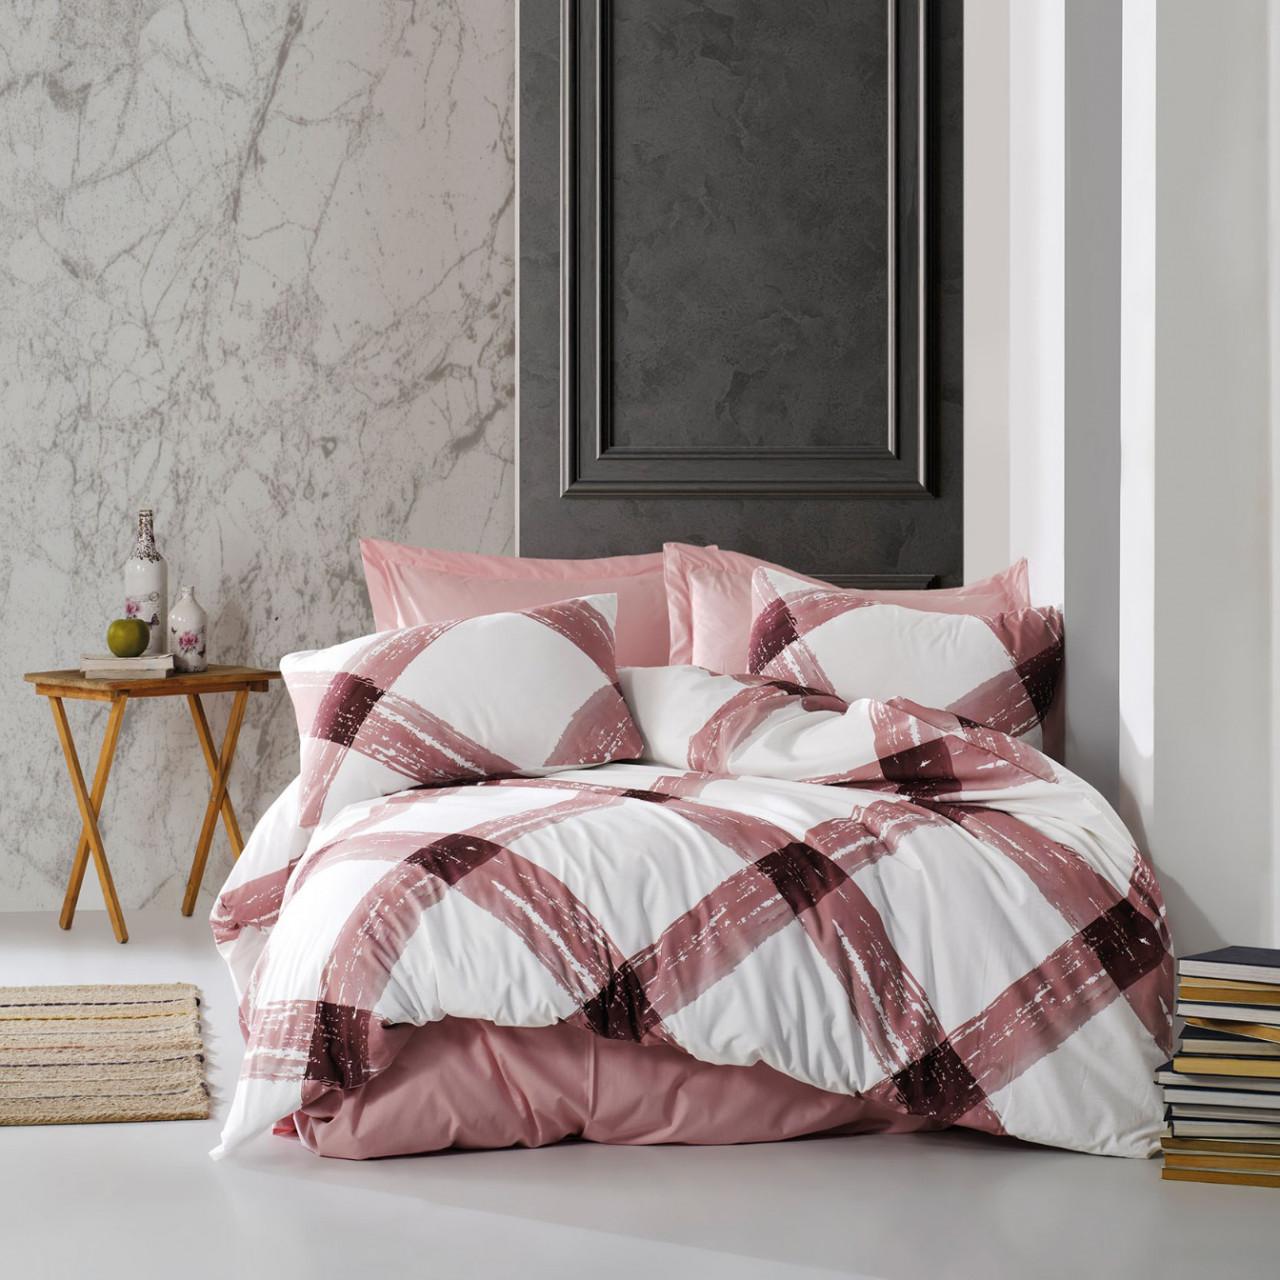 Selected image for Mille Notti Cubi rosa Pamučna posteljina za bračni ležaj, 200x220 cm, Roze-plava